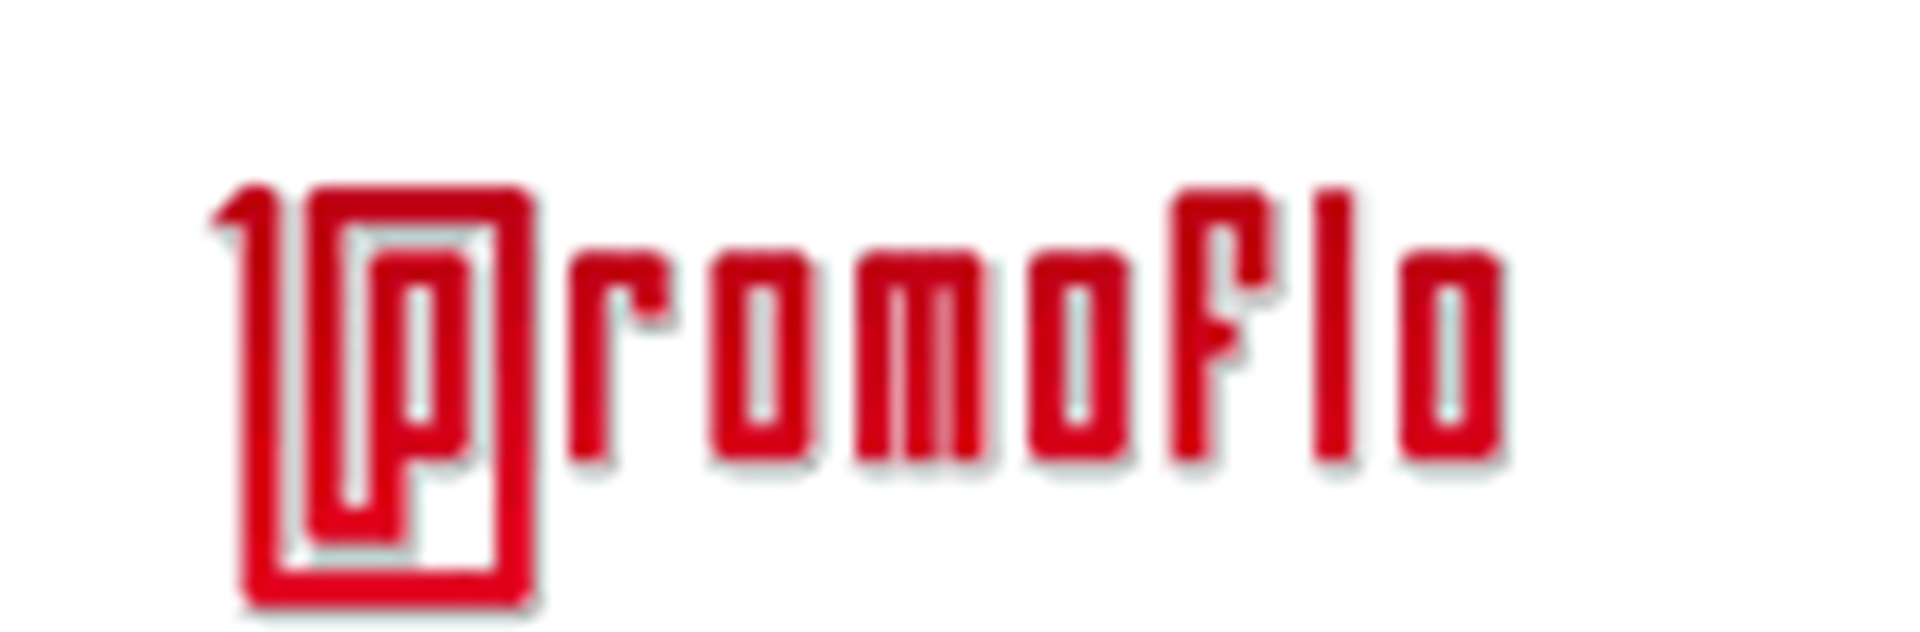 Little MMI Sponsor: Promoflo